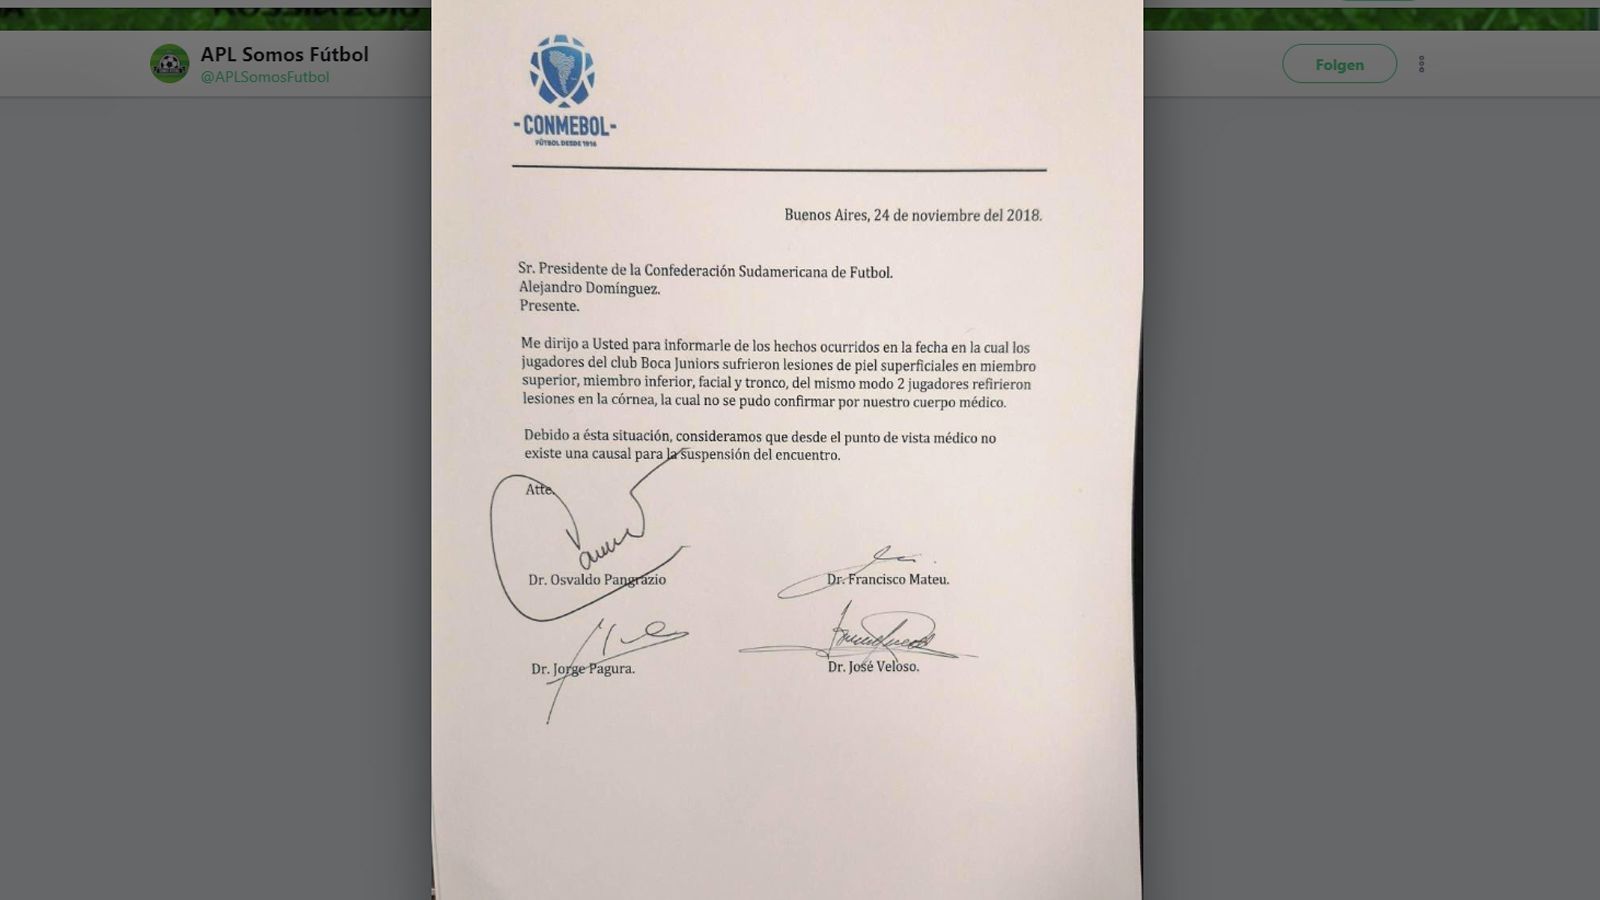 
                <strong>CONMEBOL-Dokument</strong><br>
                Die Boca Juniors beantragten in der Folge die Absage der Partie beim Verband. Laut eines in den sozialen Medien kursierenden Schreibens des Conmebol konnten die Verbandsärzte bei den Spielern keine gravierenden Verletzungen feststellen, die eine Absage der Partie rechtfertigen würden. Die Echtheit des Dokuments wurde bisher nicht bestätigt. Kurze Zeit darauf erklärte auch Kontrahent River Plate, nicht spielen zu wollen, wenn die Boca-Spieler nicht bereit dazu wären. Der Verband blieb allerdings auf seiner Linie und verlegte den Anstoß lediglich im Stundentakt nach hinten.
              